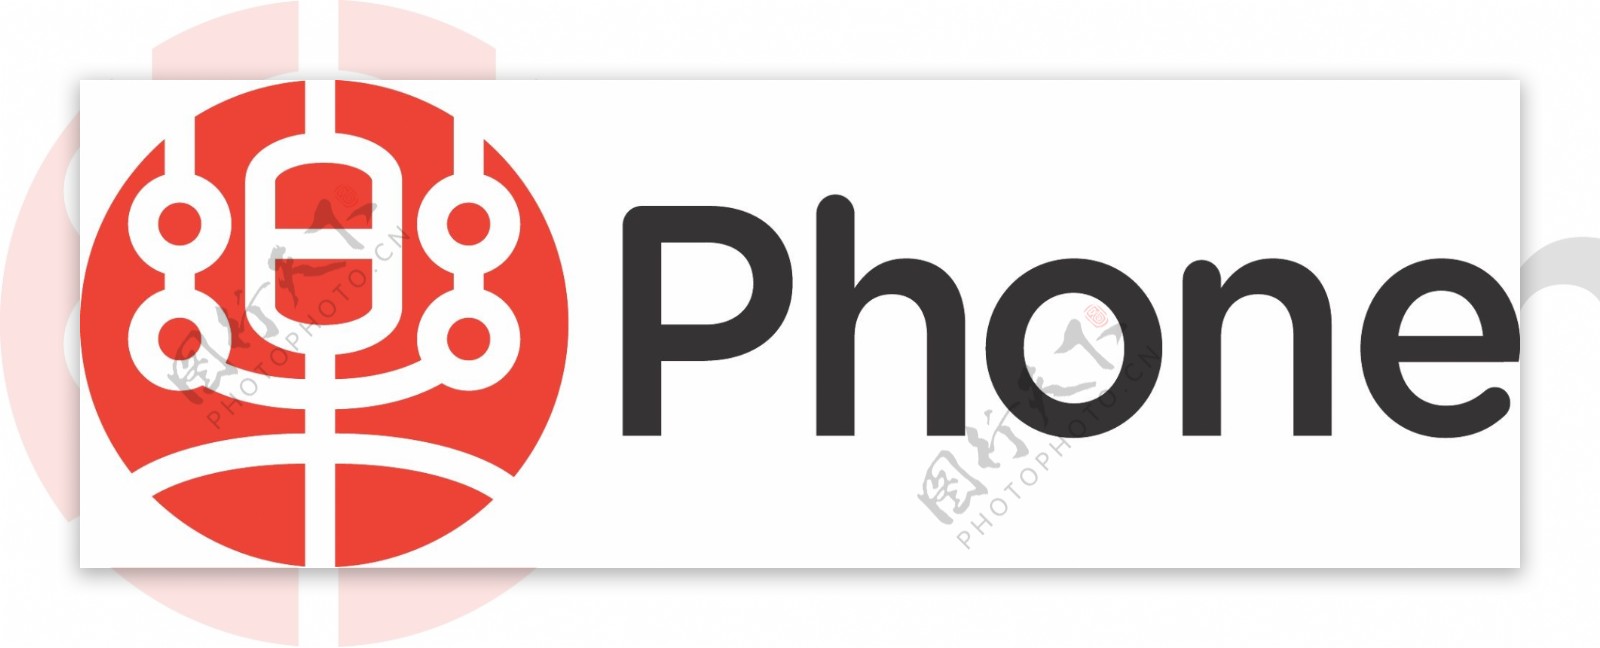 联想乐phone矢量logo图片